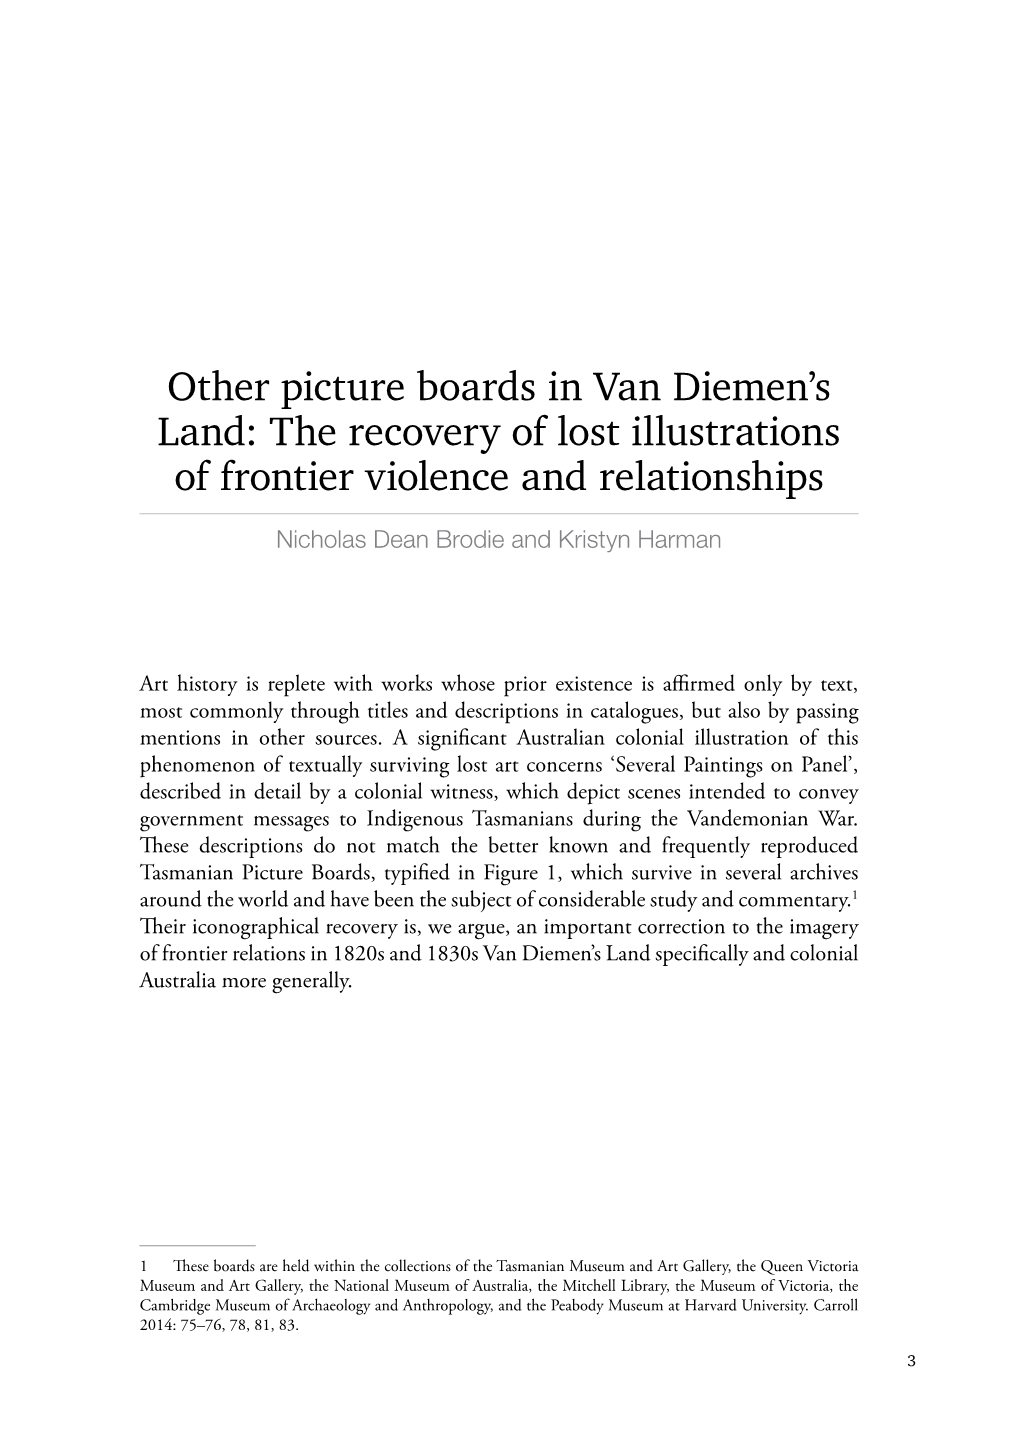 Other Picture Boards in Van Diemen's Land